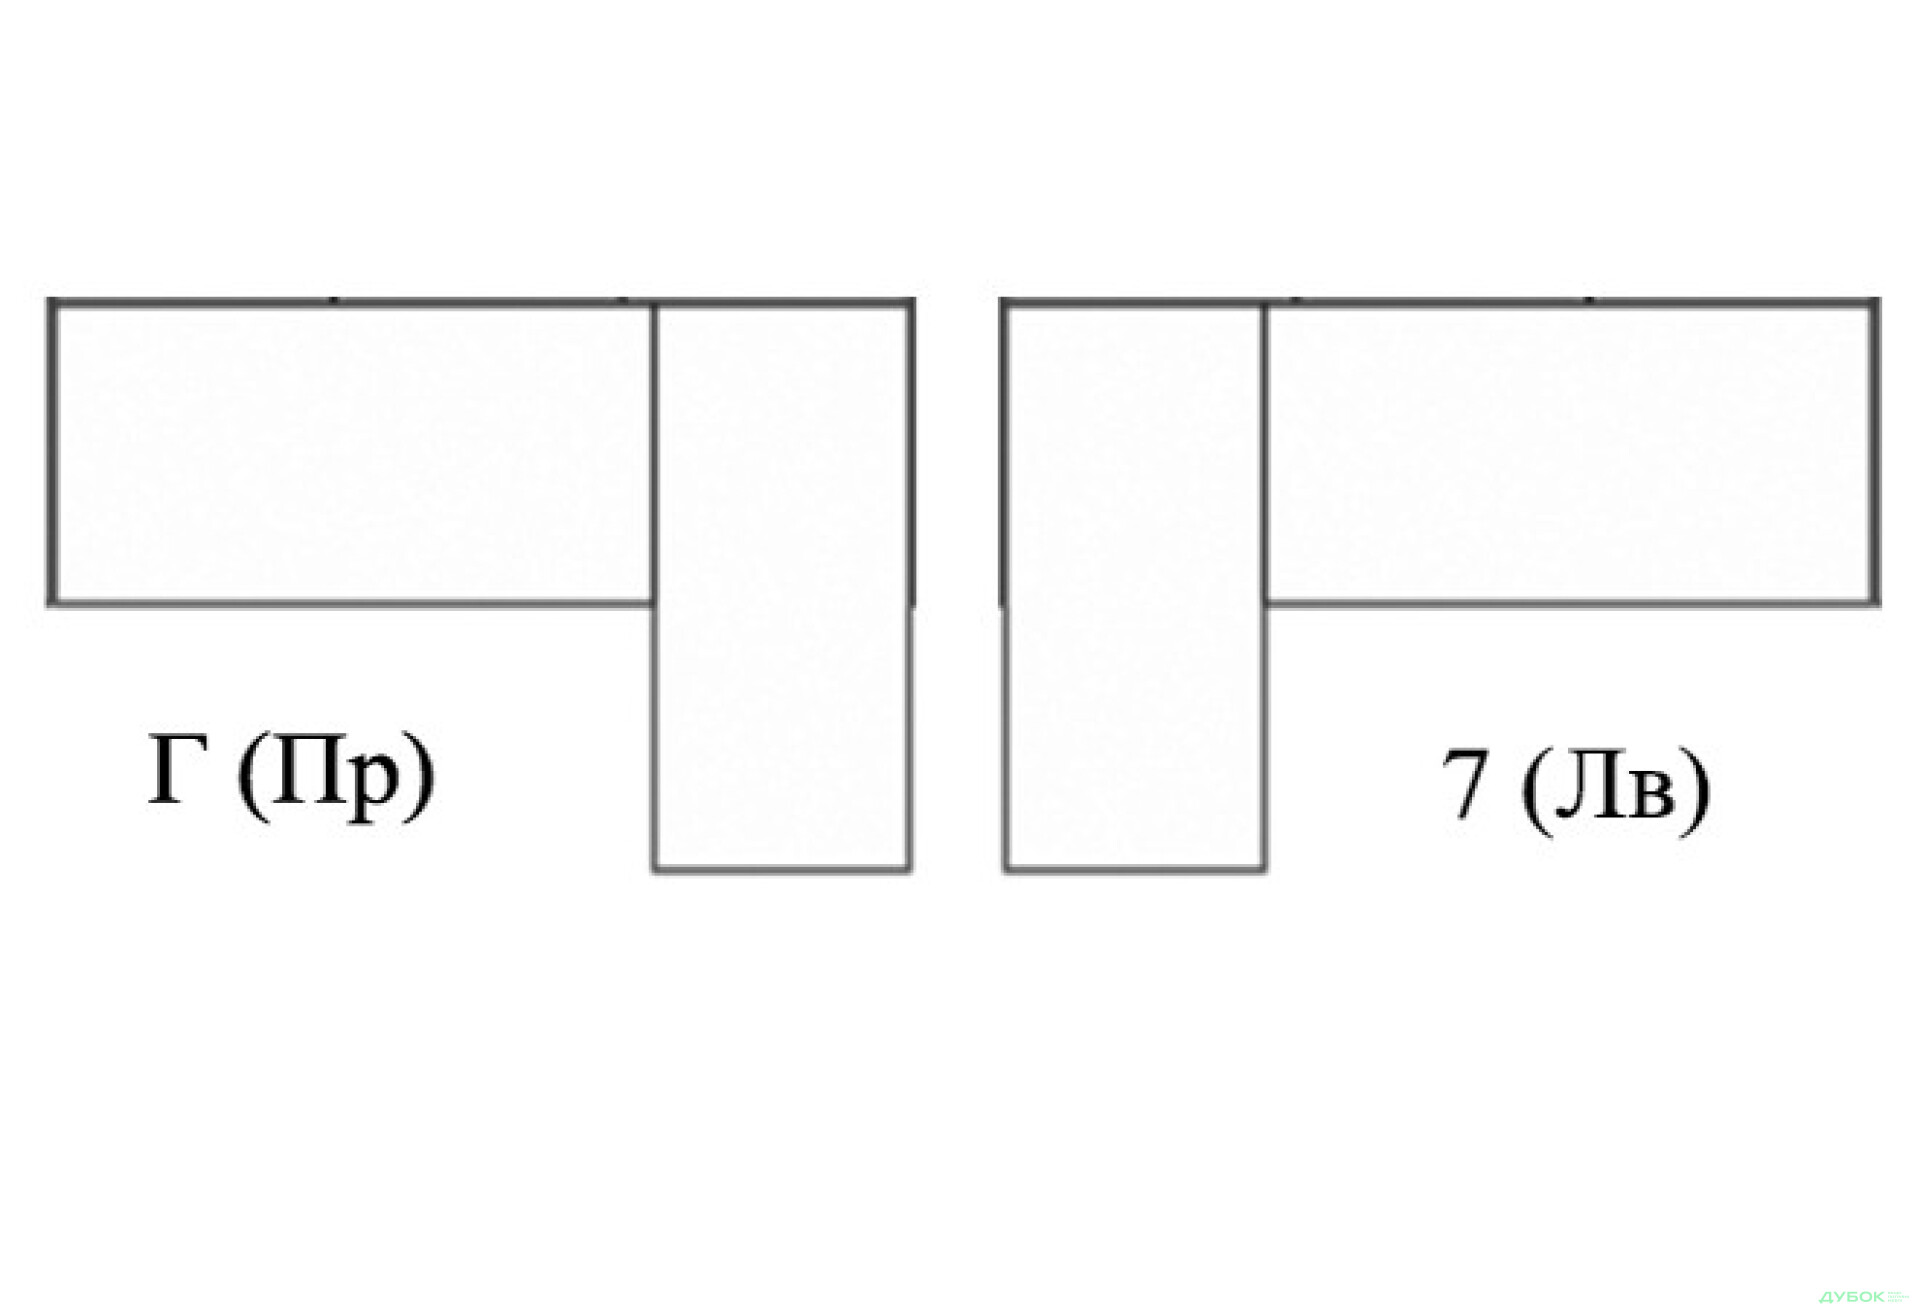 Фото 2 - Элемент №2.2 угл.кушетка (Ш 0.8м) шаговый механизм Модульная система-конструктор Бенджамин Dizi